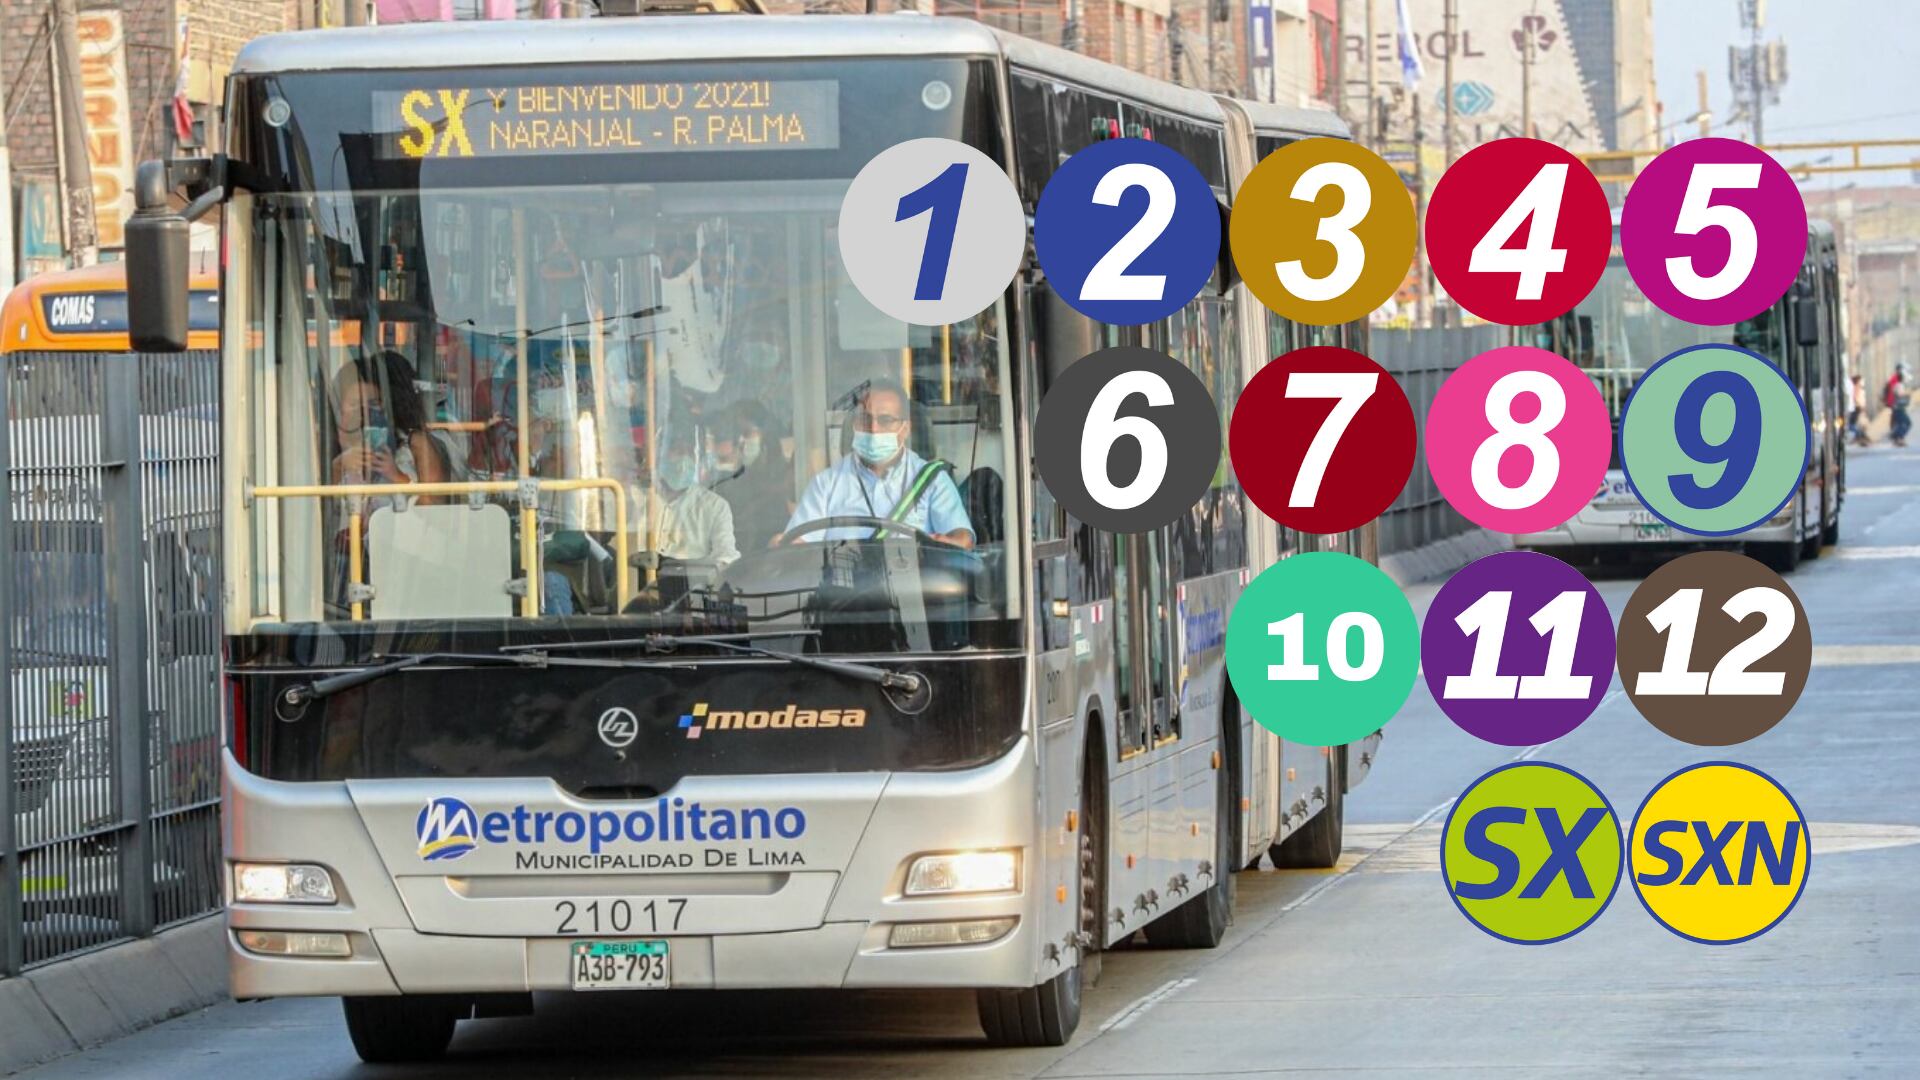 El Metropolitano tiene un total de 14 servicios expresos en diferentes recorridos y horarios para llevar a los ciudadanos de Lima Metropolitana a sus hogares y centros de trabajo. (Foto: Composición - Infobae/Renato Silva/ANDINA)